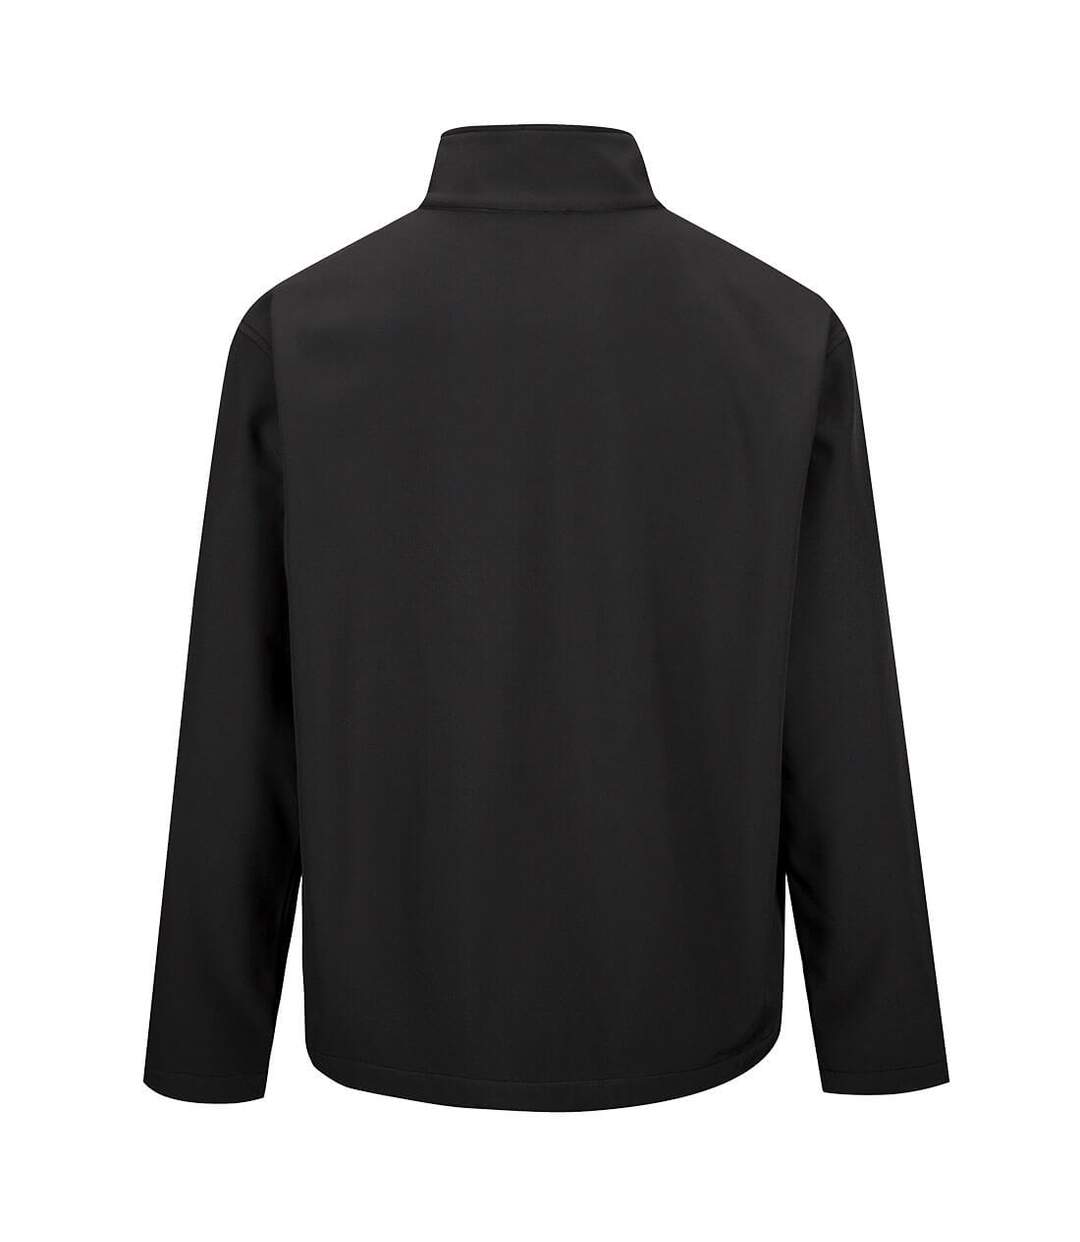 Portwest Mens Soft Shell Jacket (Black)